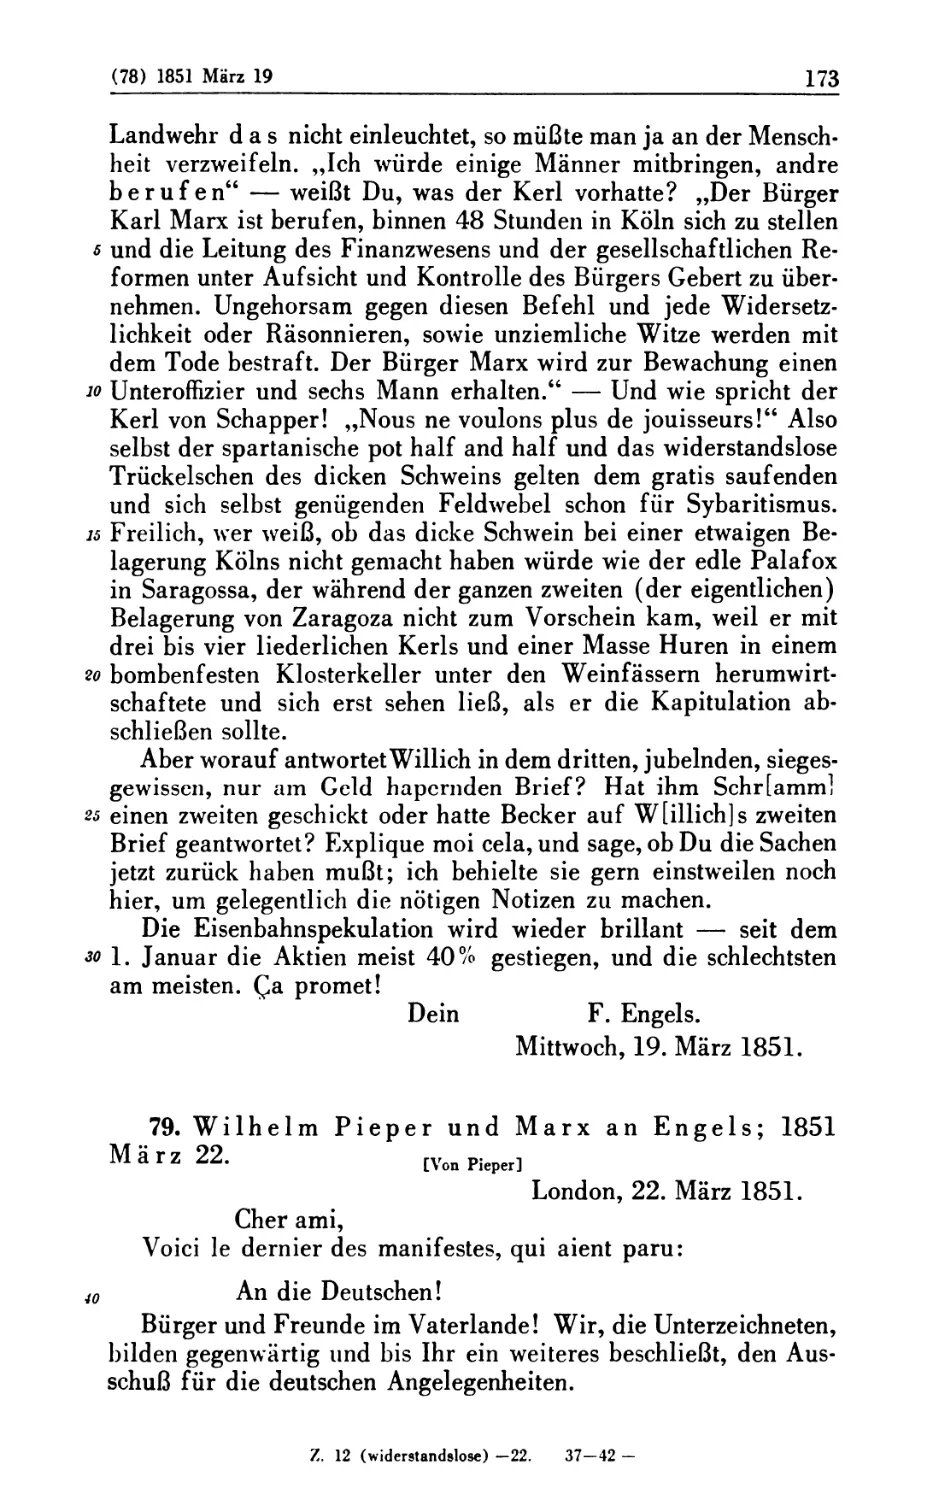 79. Wilhelm Pieper und Marx an Engels; 1851 März 22